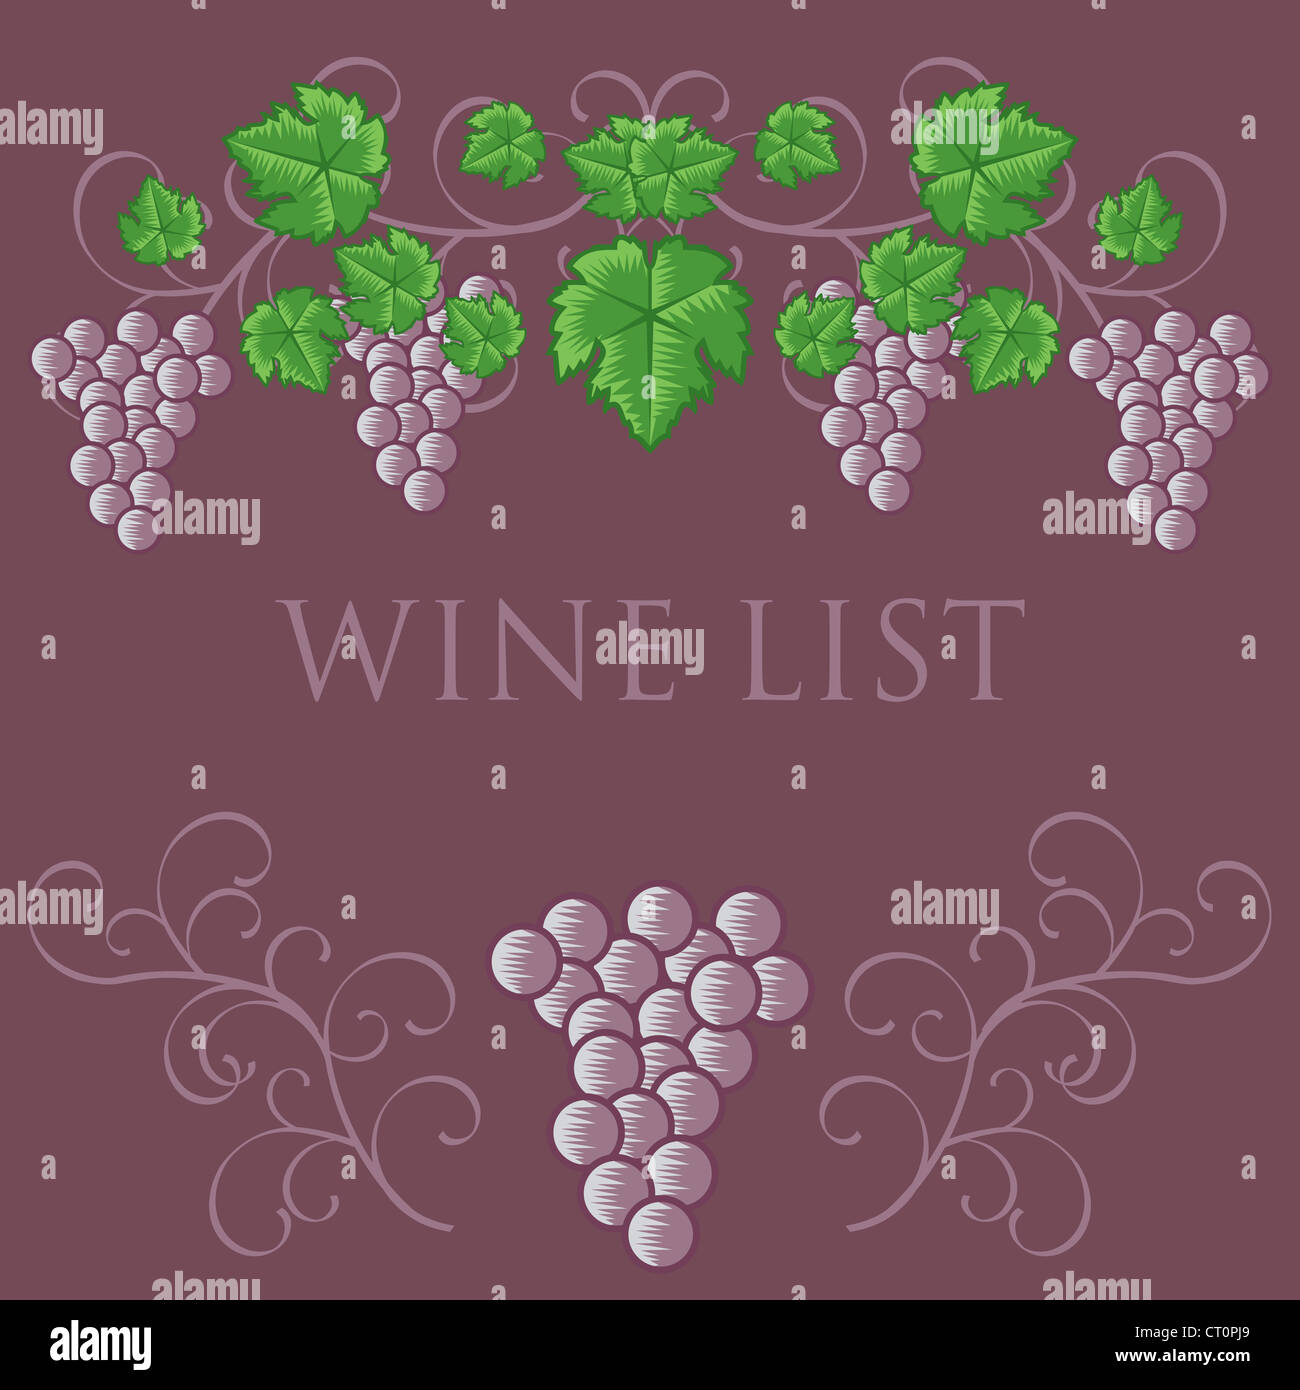 Lista de vinos el diseño de la cubierta Foto de stock